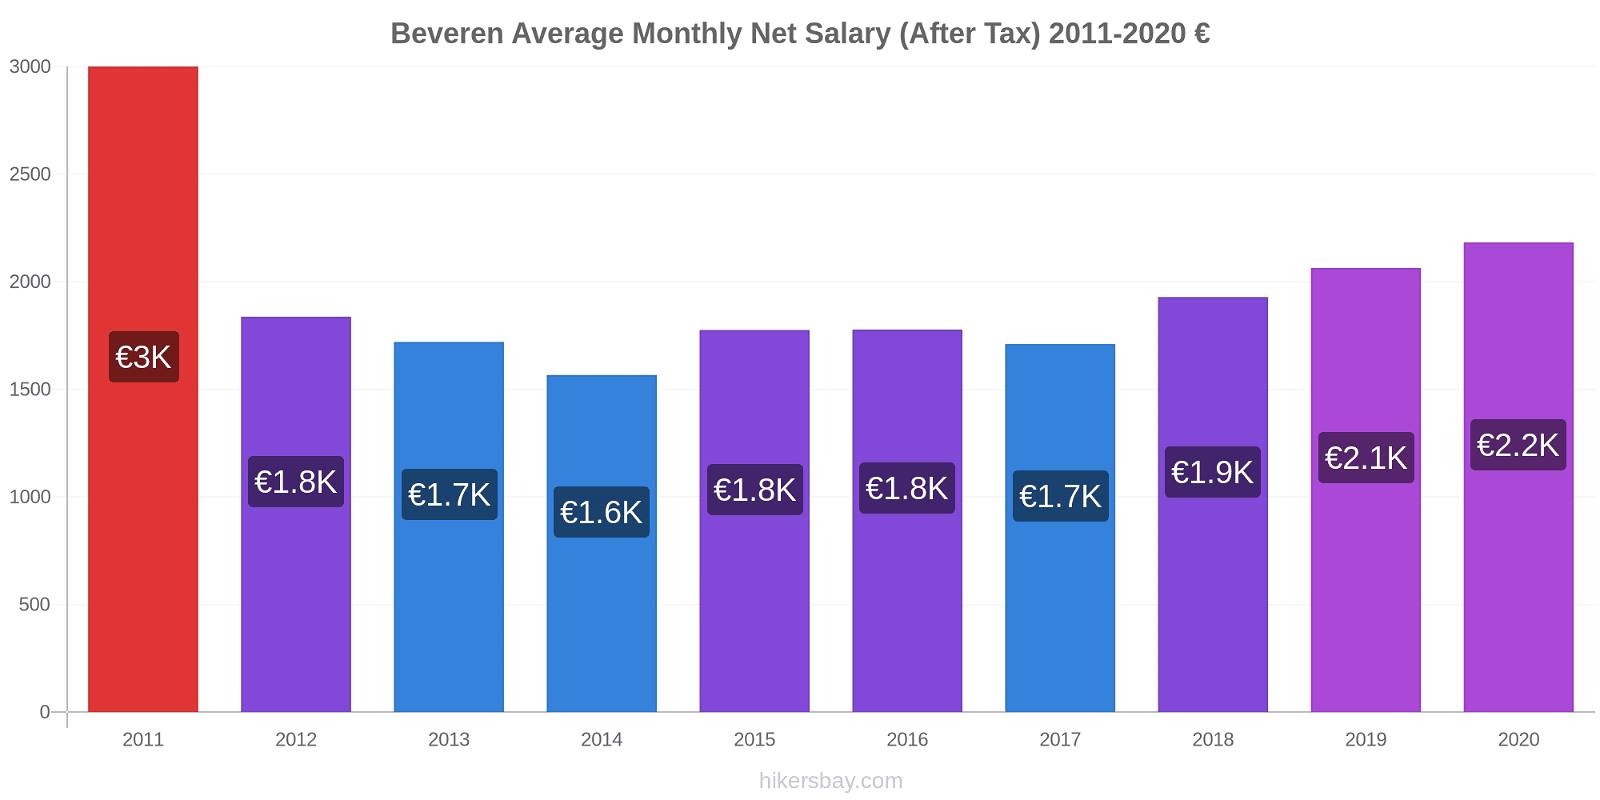 Beveren price changes Average Monthly Net Salary (After Tax) hikersbay.com